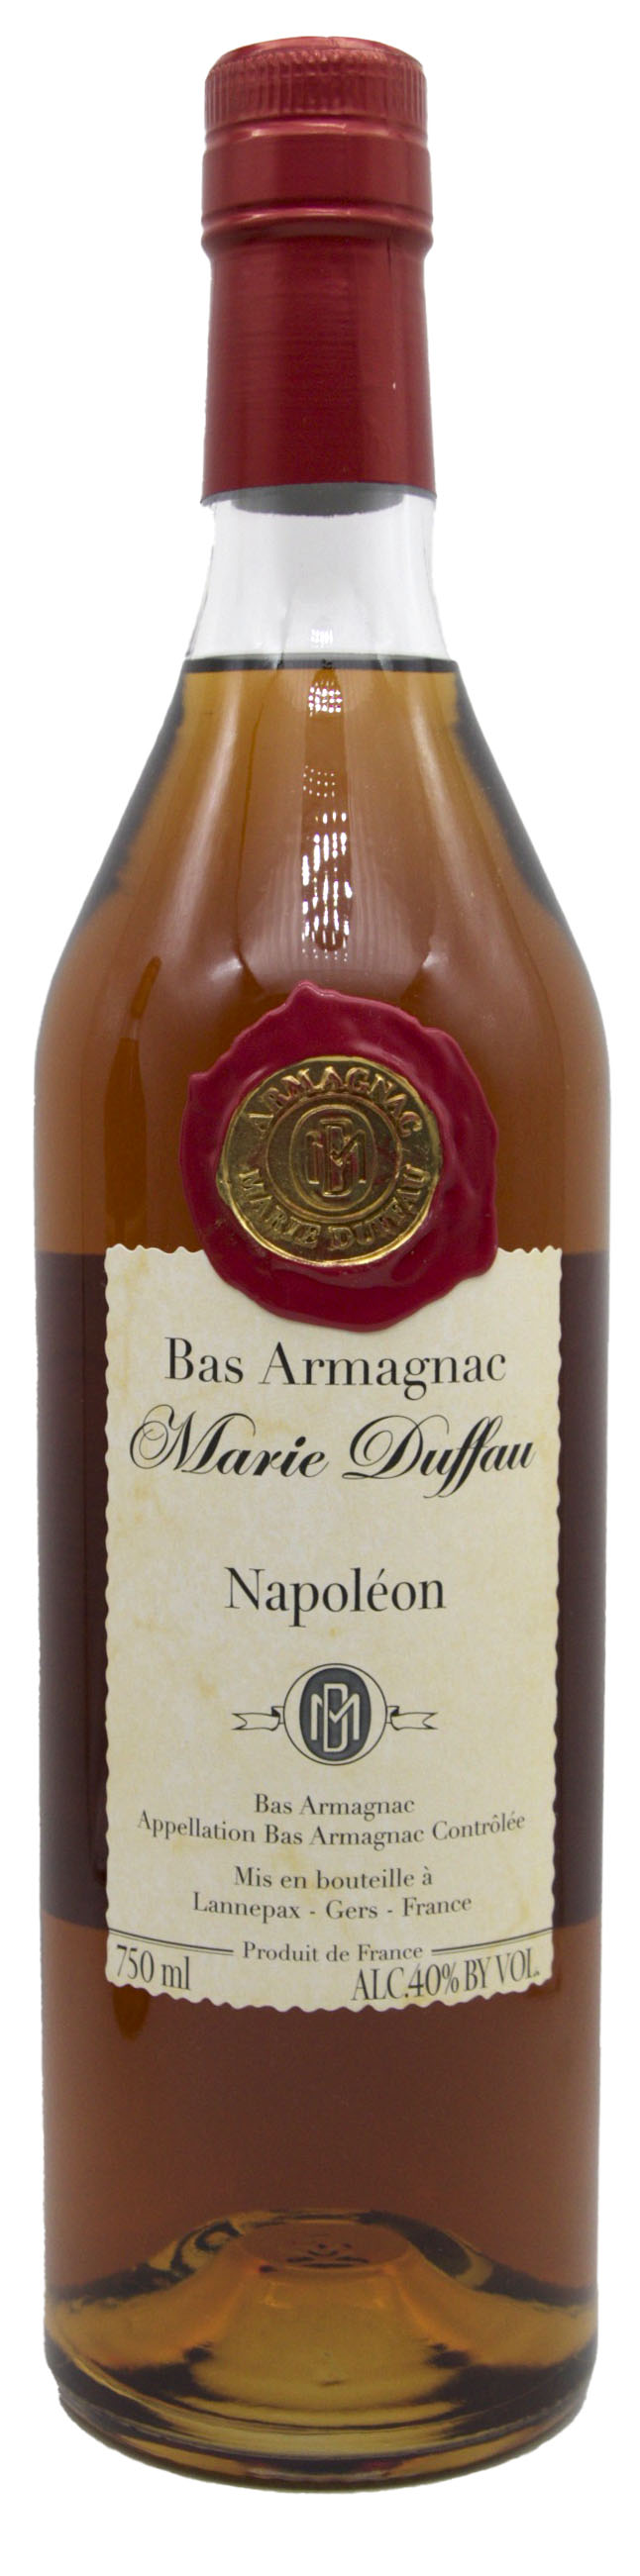 Napoleon Bas Armagnac 750ml